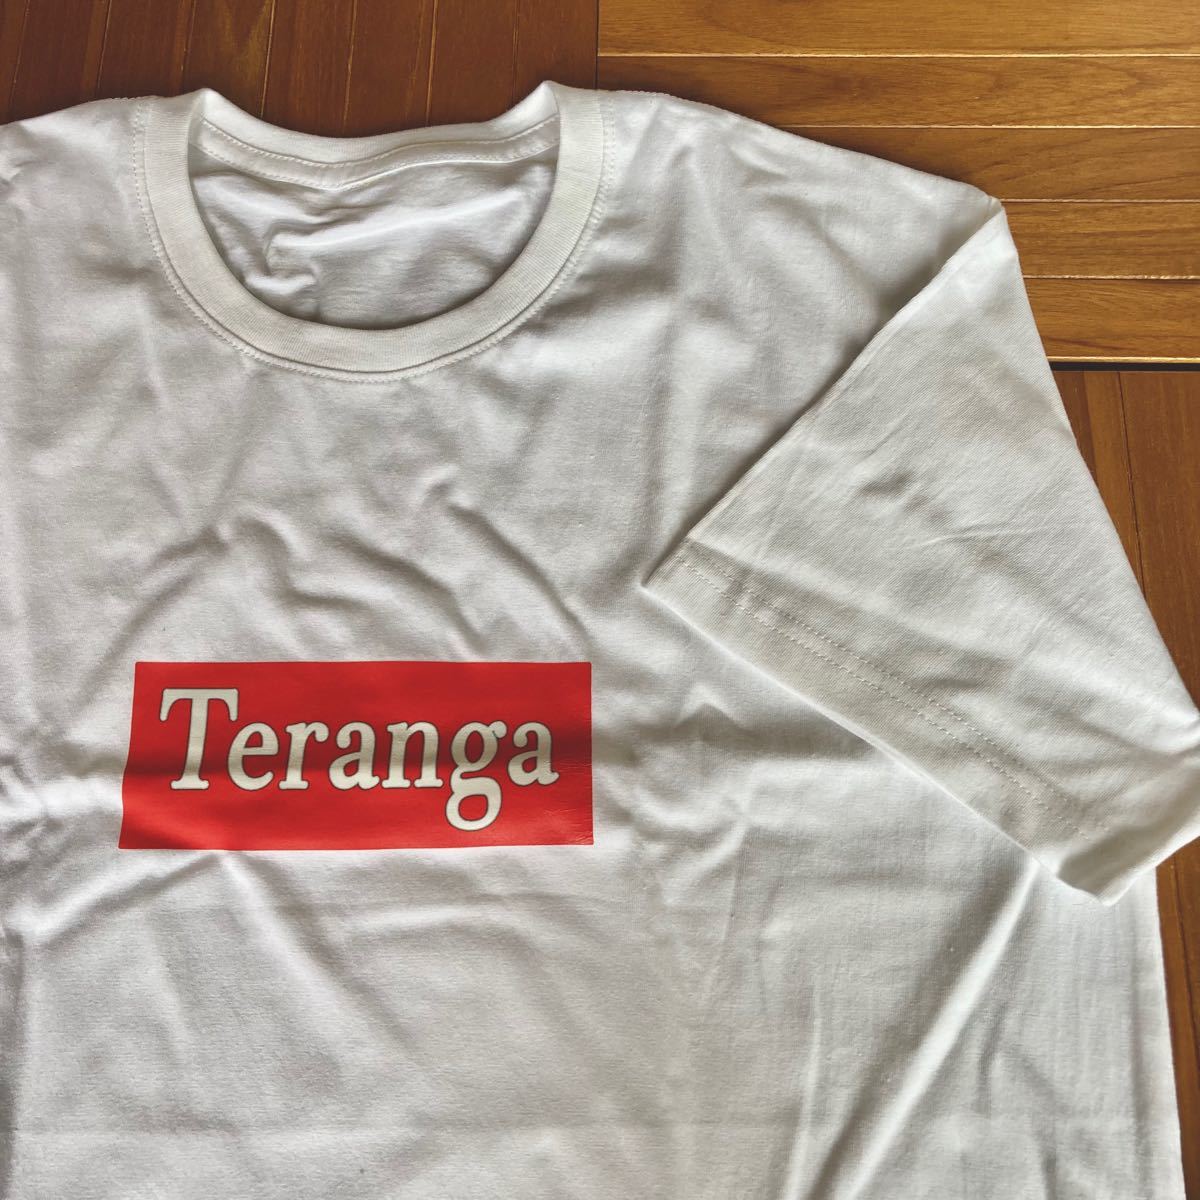 "Teranga” ボックスロゴTEE Mサイズ Tシャツ ユニセックス